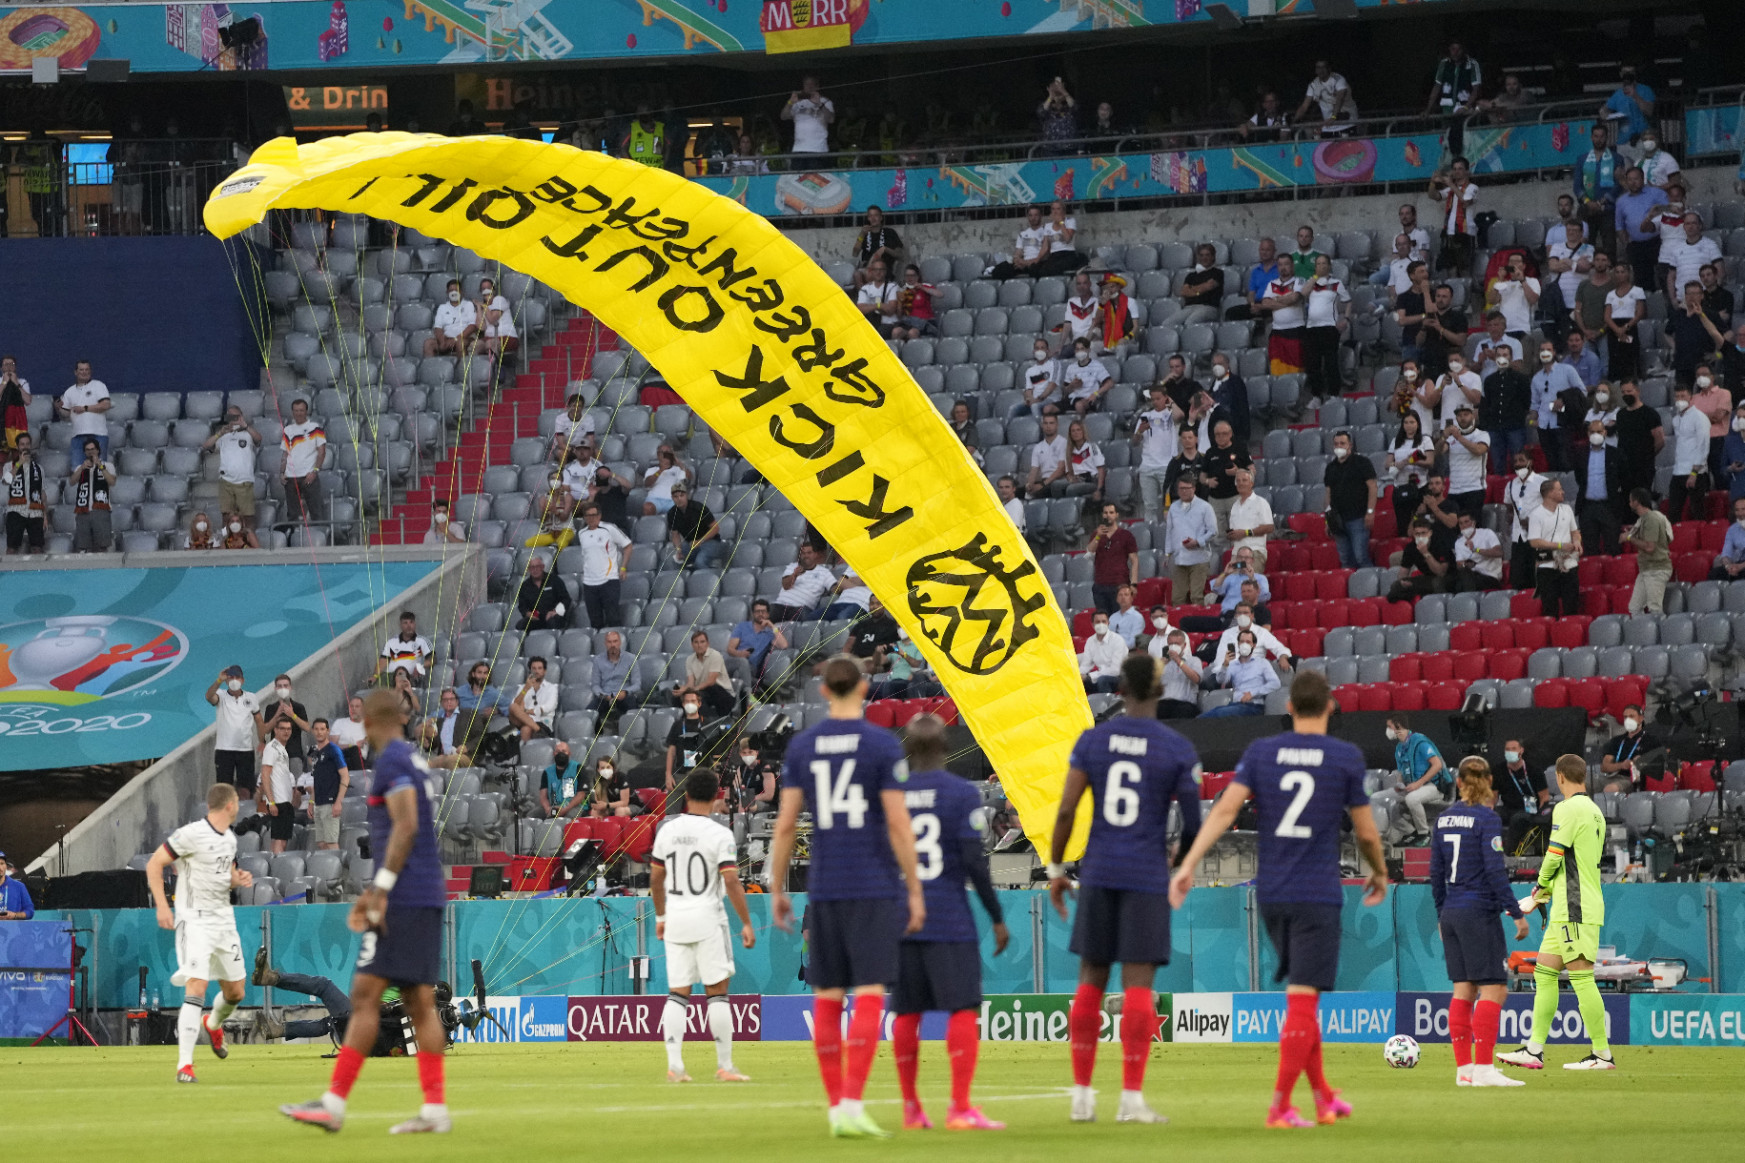 Észrevették a mesterlövészek a Greenpeace feliratot, azért nem lőttek a stadionba repülő siklóernyősre